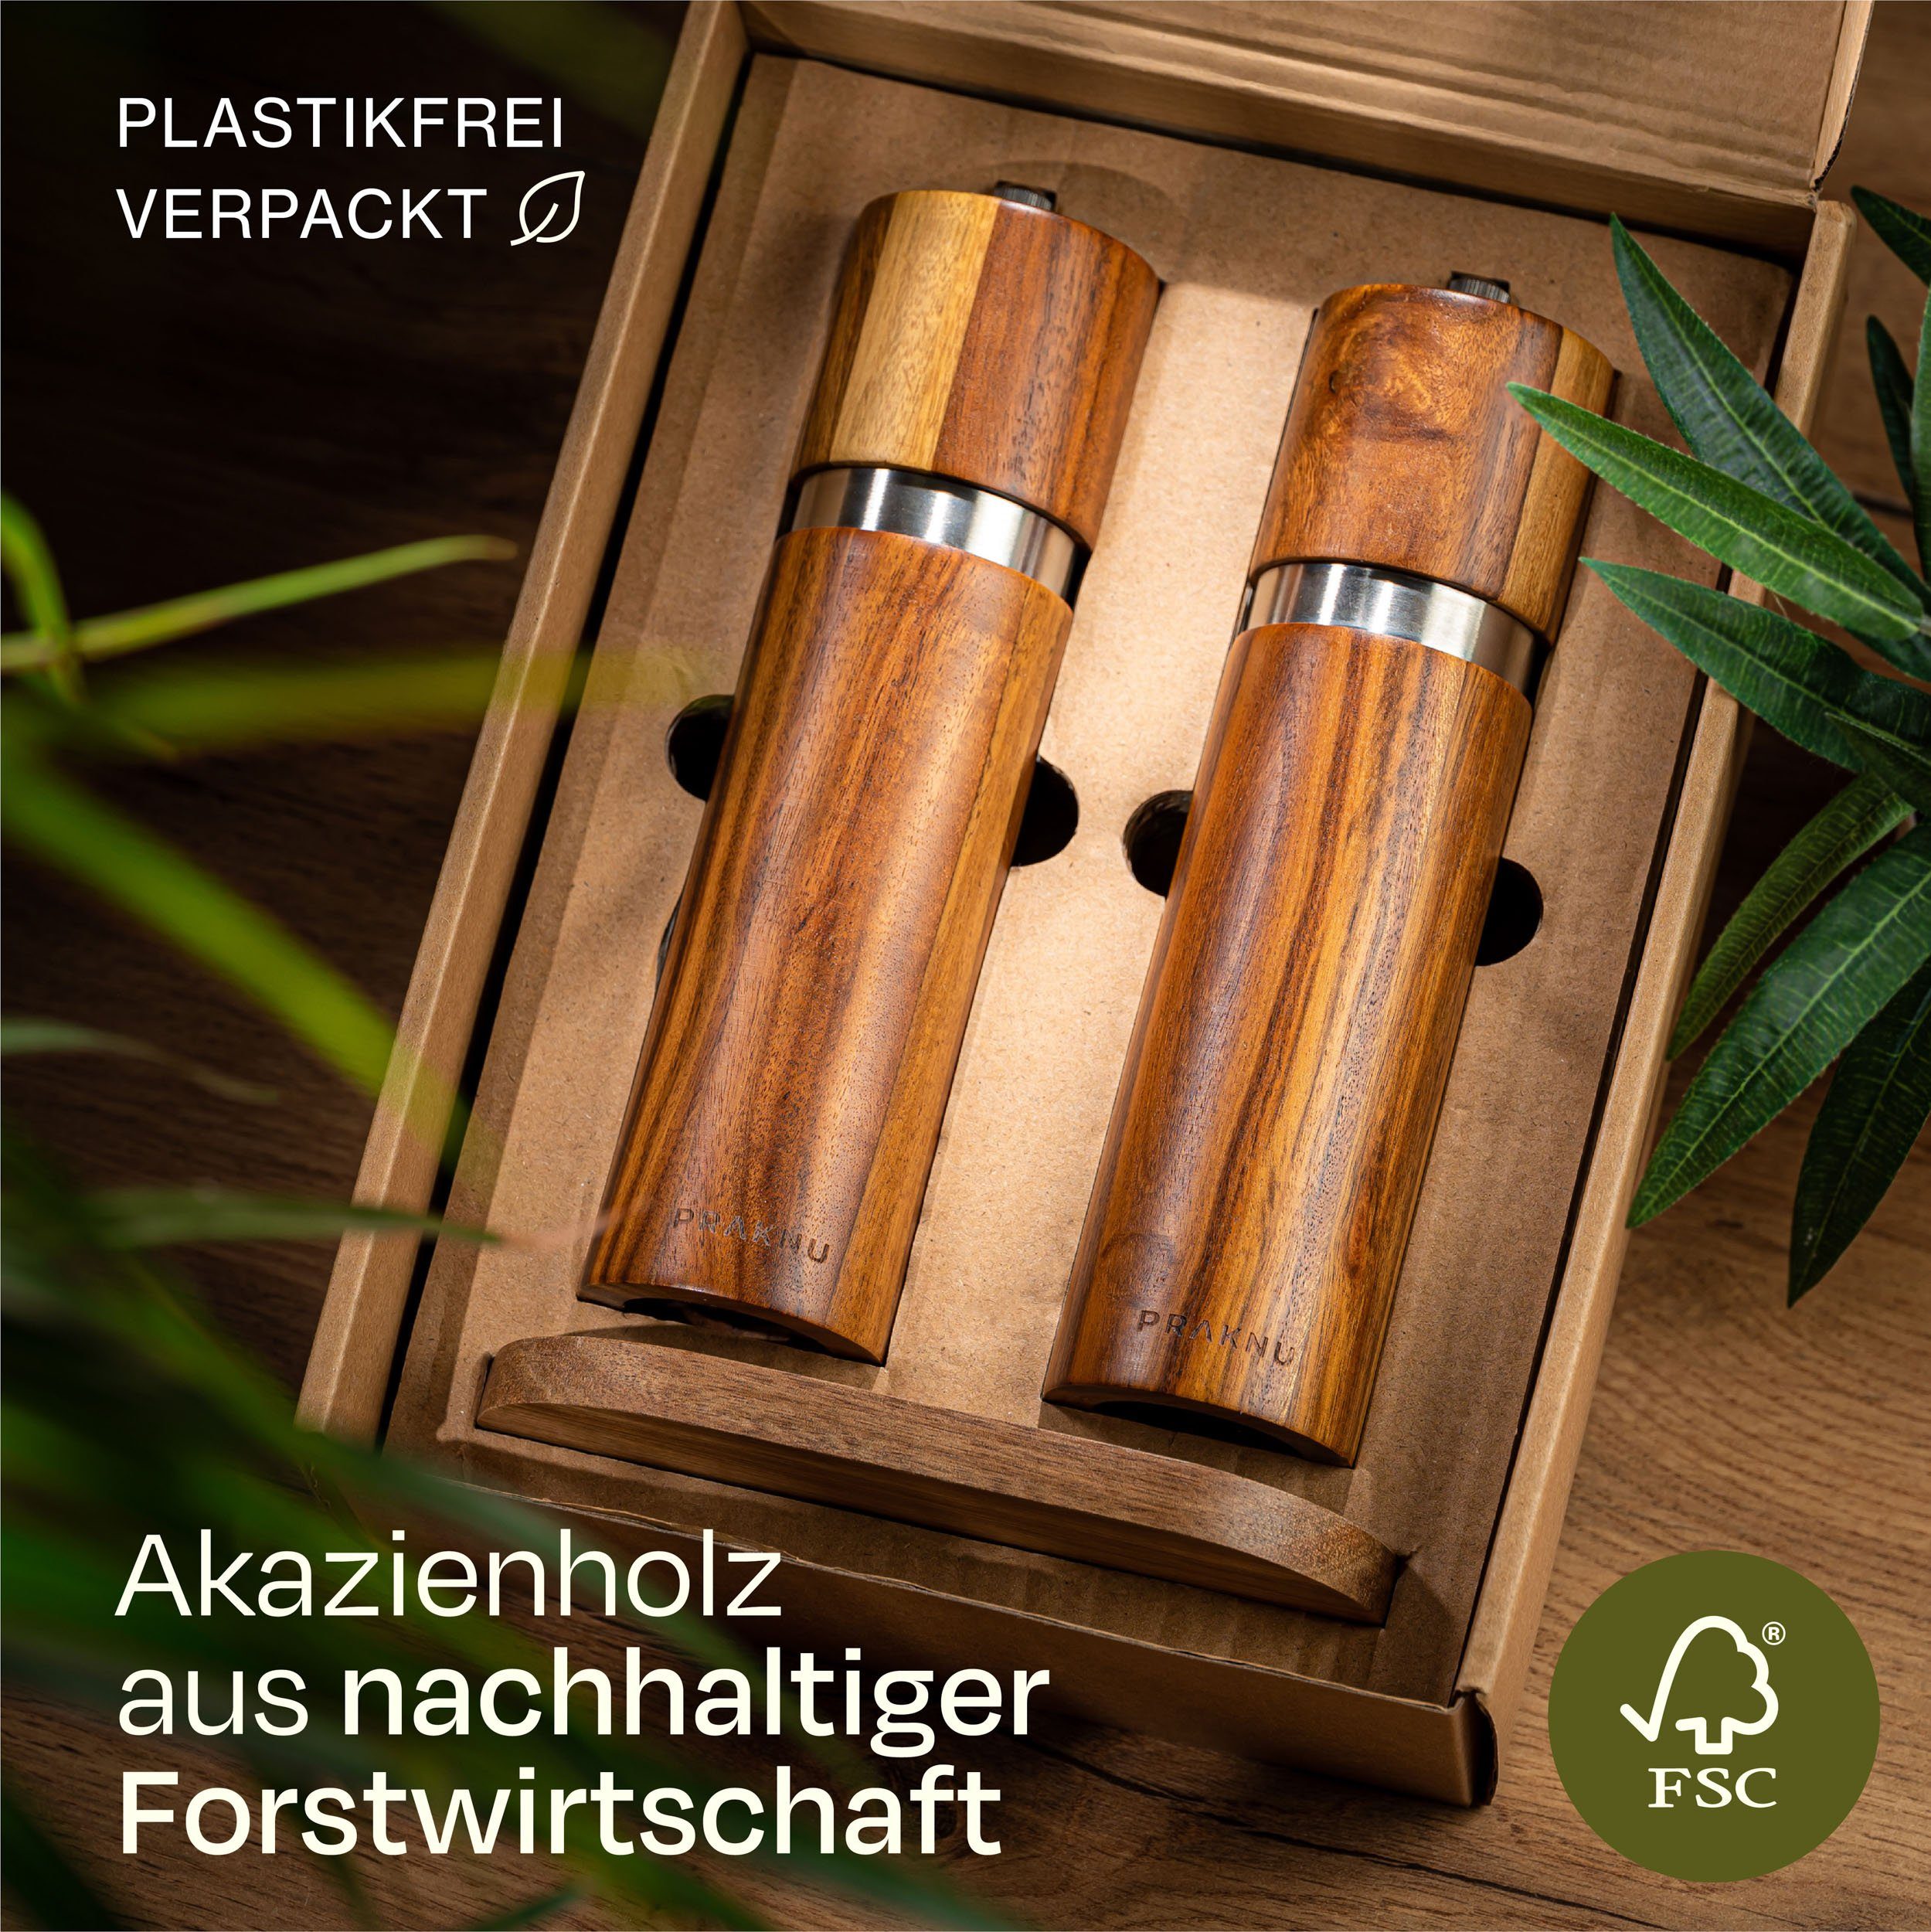 Praknu FSC Nachhaltiges Holz aus Plastikfrei und - Salz- Pfeffermühle Akazienholz Gewürzmühle - Keramikmahlwerk manuell, Langlebiges